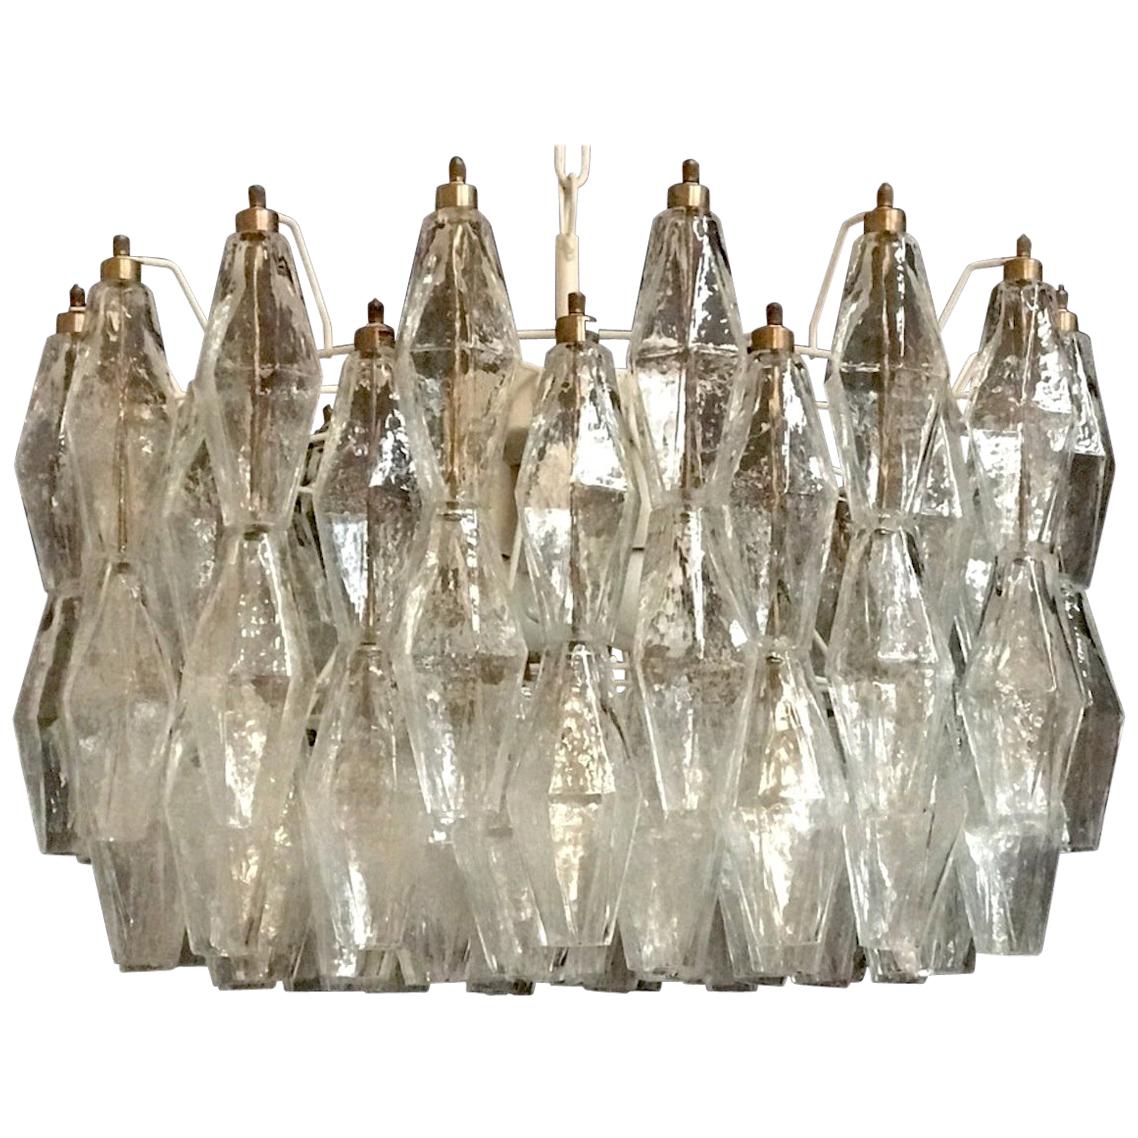 Poliedri Murano Glass Chandeliers Carlo Scarpa Style for Venini